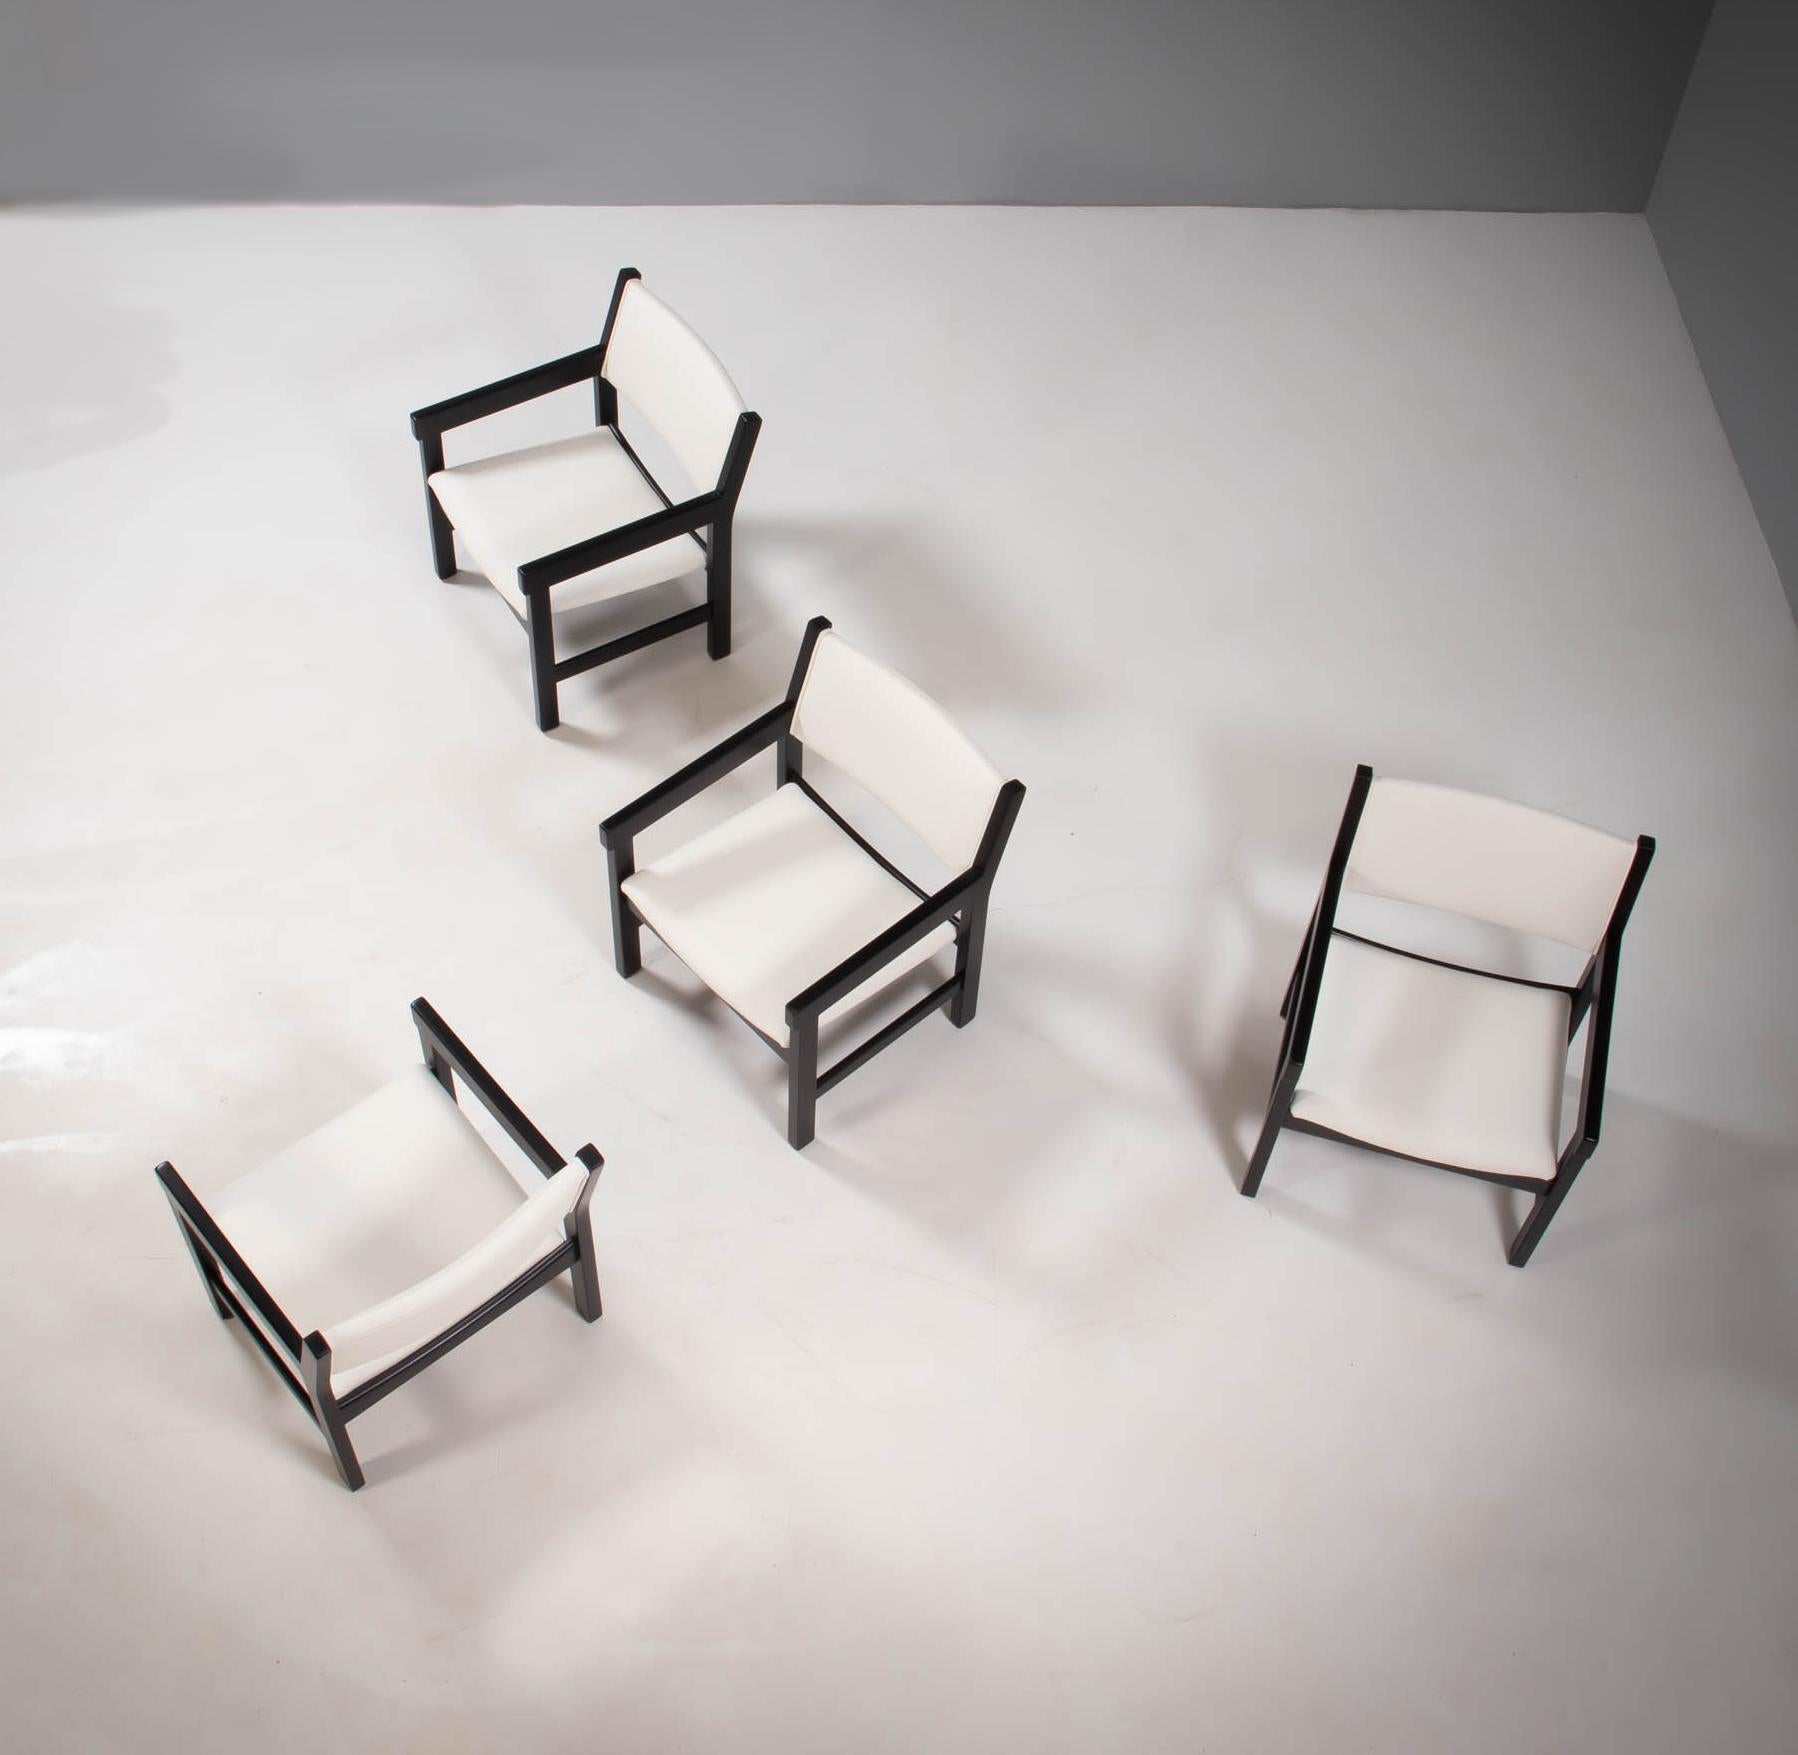 Conçu par Hans J. Wegner pour GETAMA, cet ensemble de quatre fauteuils GE 151 est un exemple classique du design moderne du milieu du siècle.

Dotées de cadres et d'accoudoirs angulaires en bois de hêtre peint en noir, les chaises nouvellement